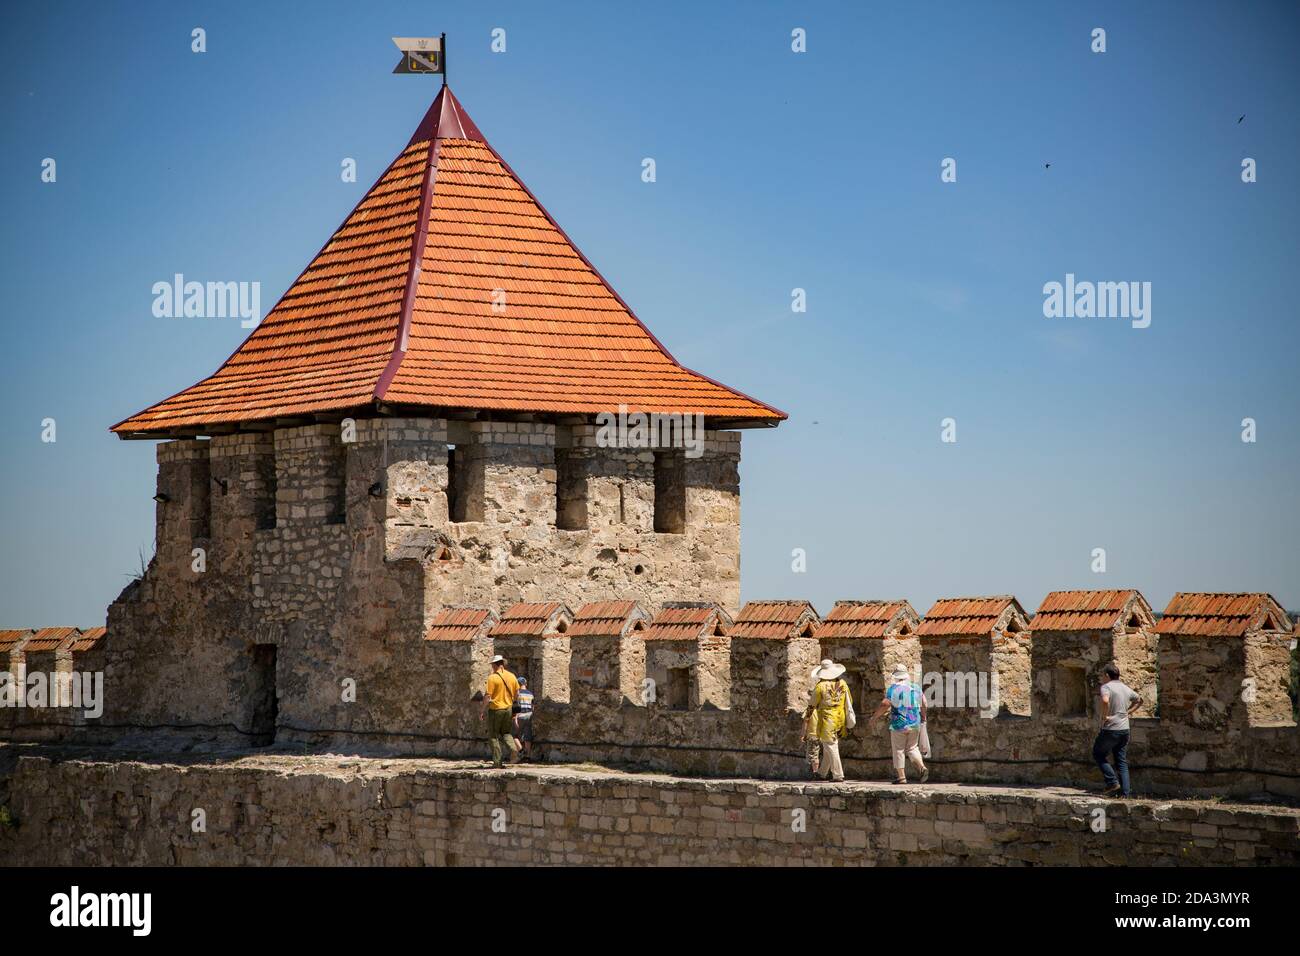 La fortezza ottomana del XVI secolo a Bender, in Moldavia, è di fatto sotto il controllo della Repubblica moldavia pridnestroviana (Transnistria). Foto Stock